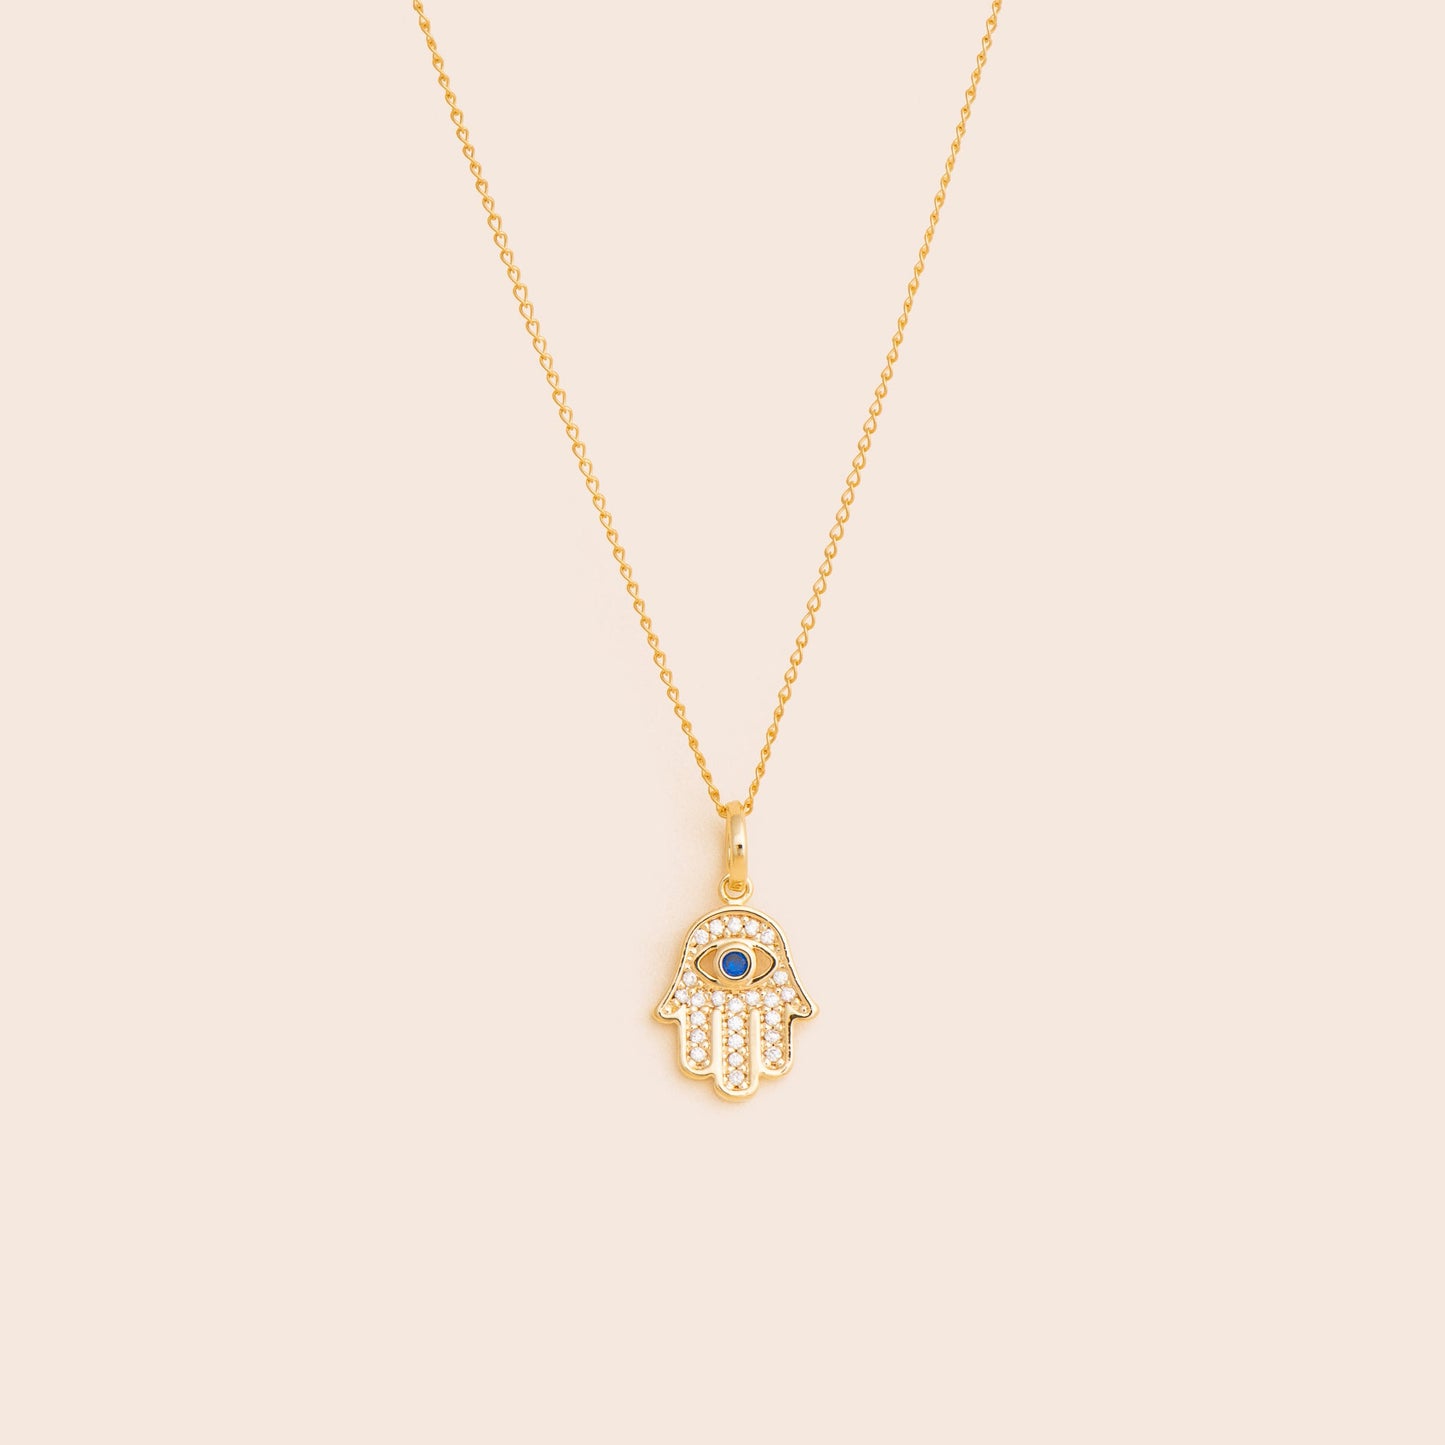 Hand of Hamsa Necklace - Gold Filled - Gemlet